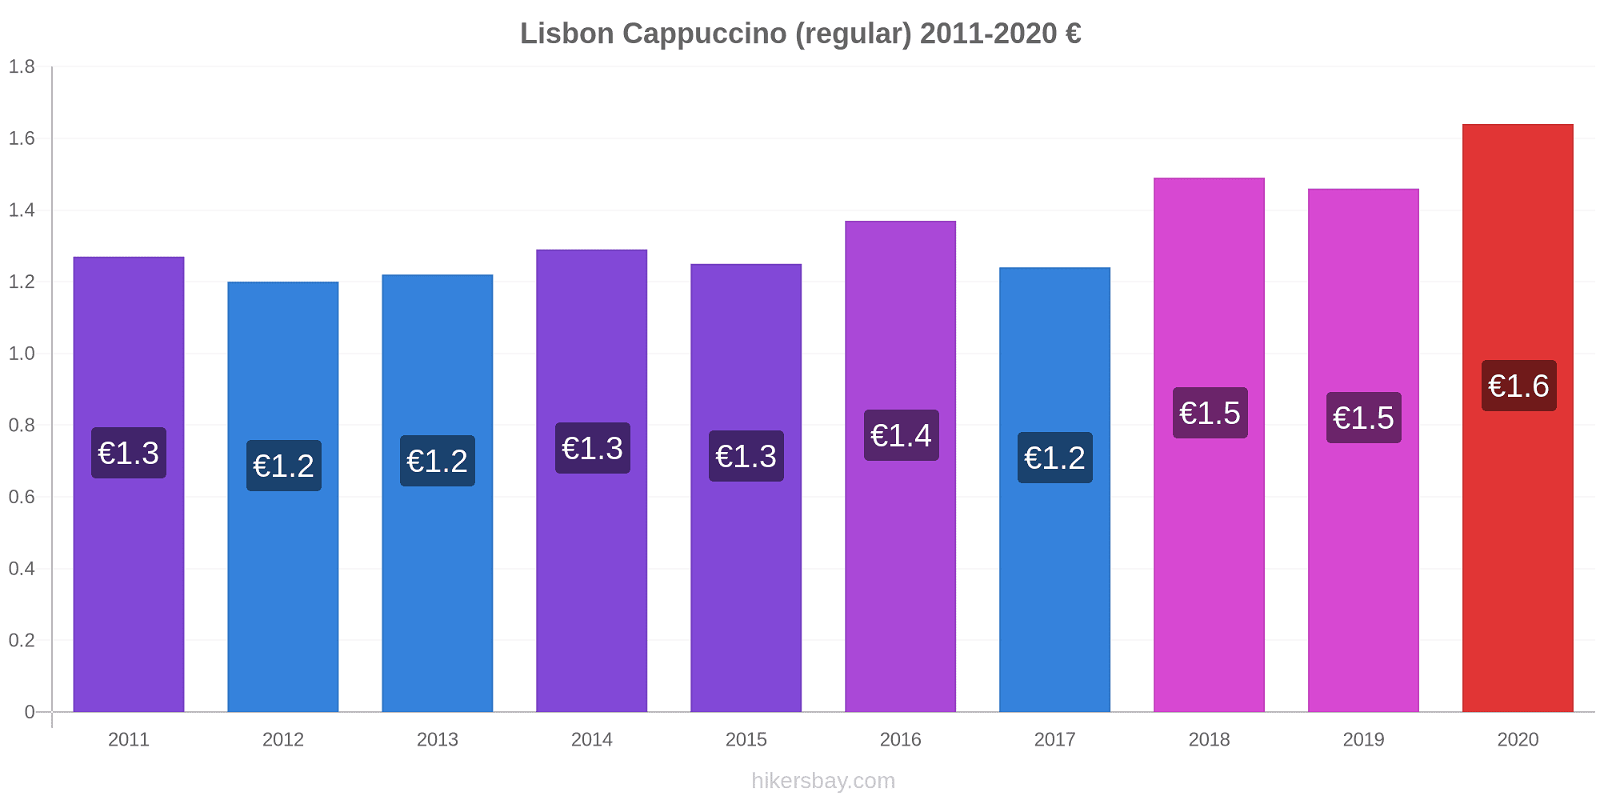 Lisbon price changes Cappuccino (regular) hikersbay.com